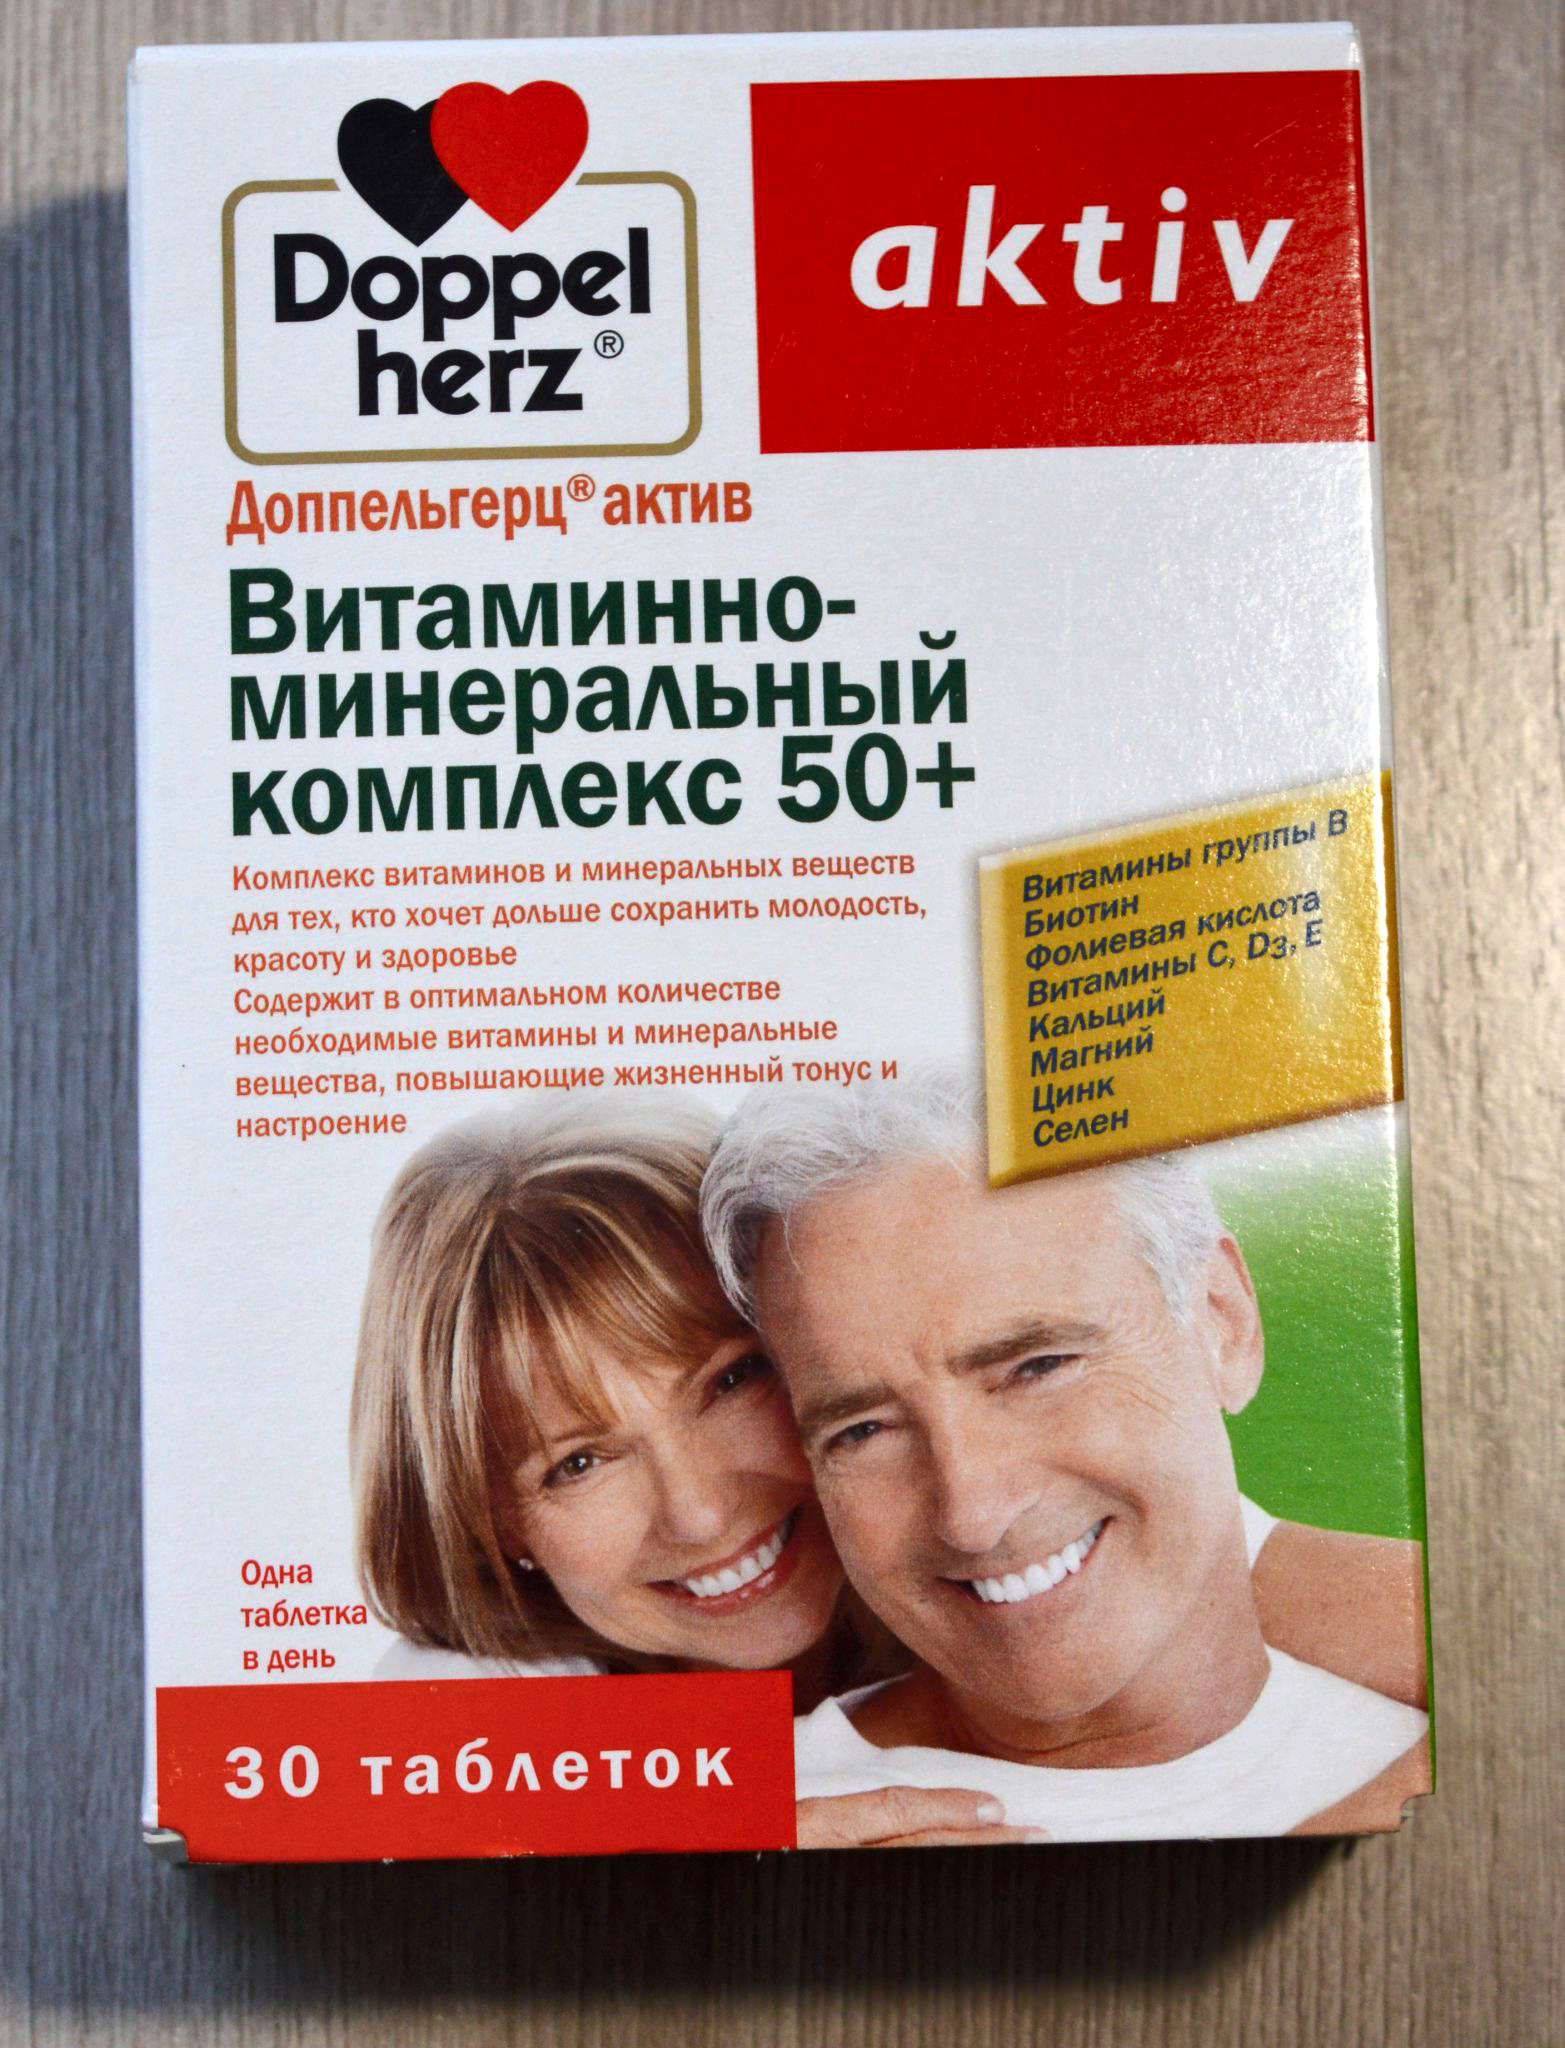 Какие витамины принимать пожилым людям. Витамины Доппельгерц 50+. Допель Герц 50+ для женщин. Допель Герц 50+ для женщин состав витаминов. Doppel Herz Vitamin Mineral Complex 50+.